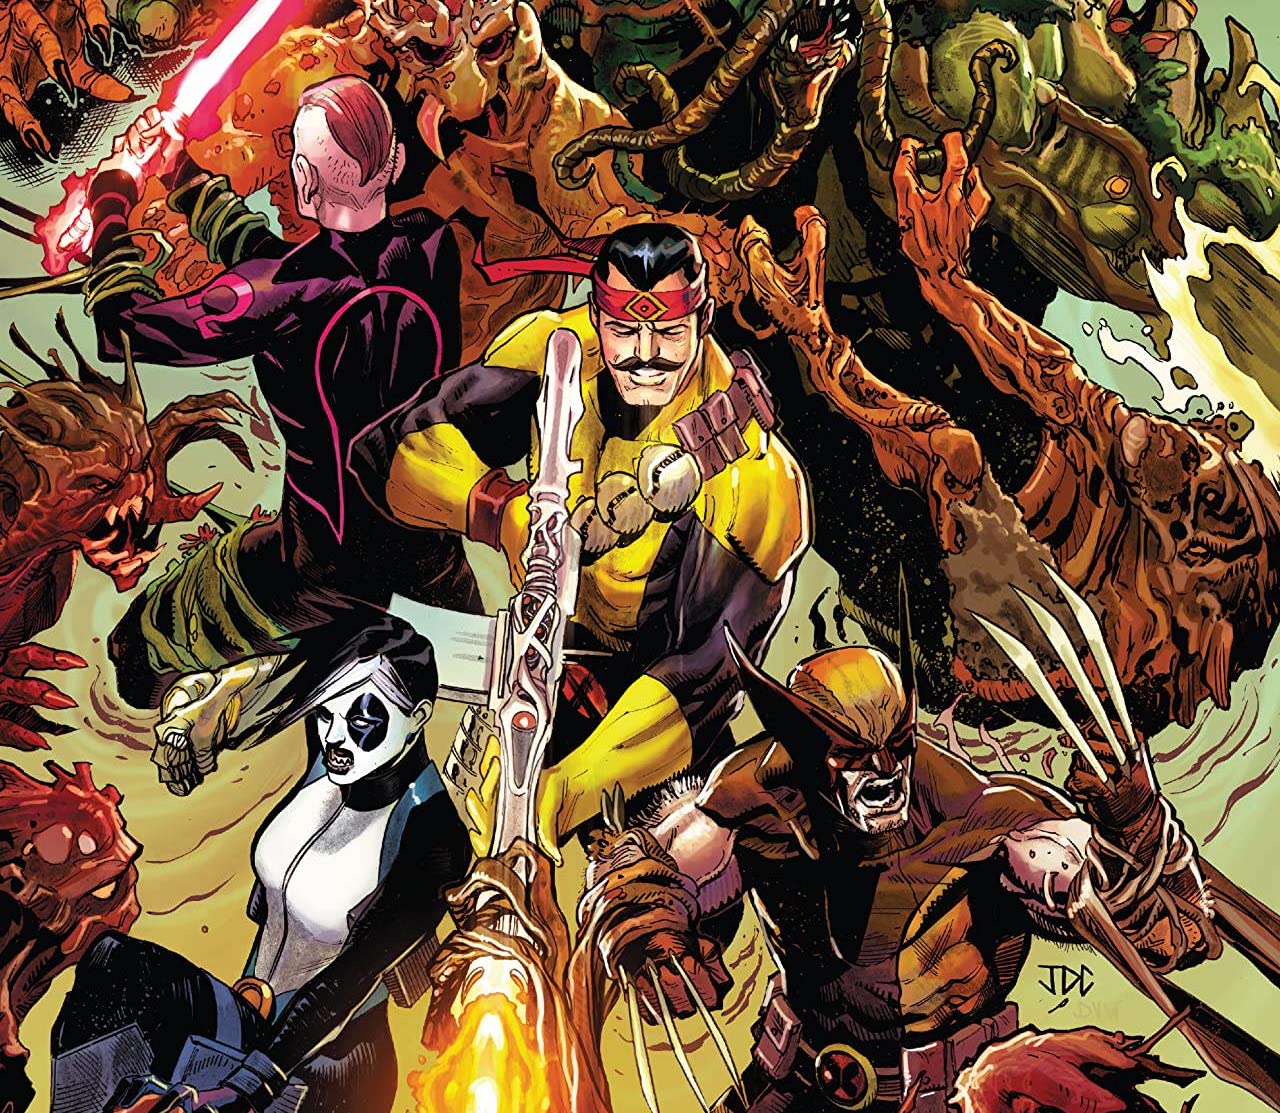 'X-Force' #22 features an all-out war on Krakoa